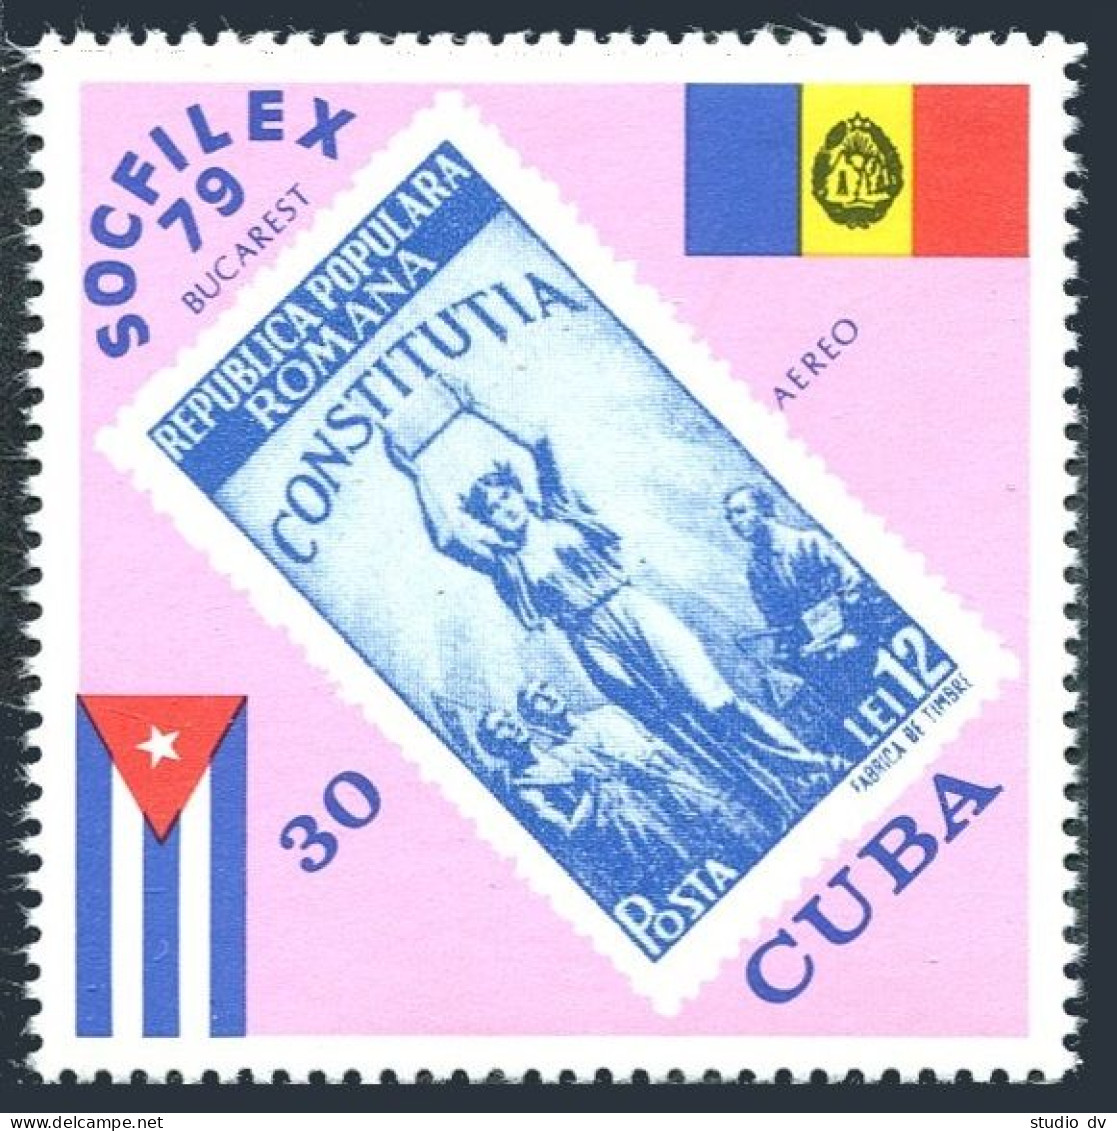 Cuba C322, MNH. Michel 2436. SOCFILEX-1979, Bucharest, Flags, Stamp. - Neufs